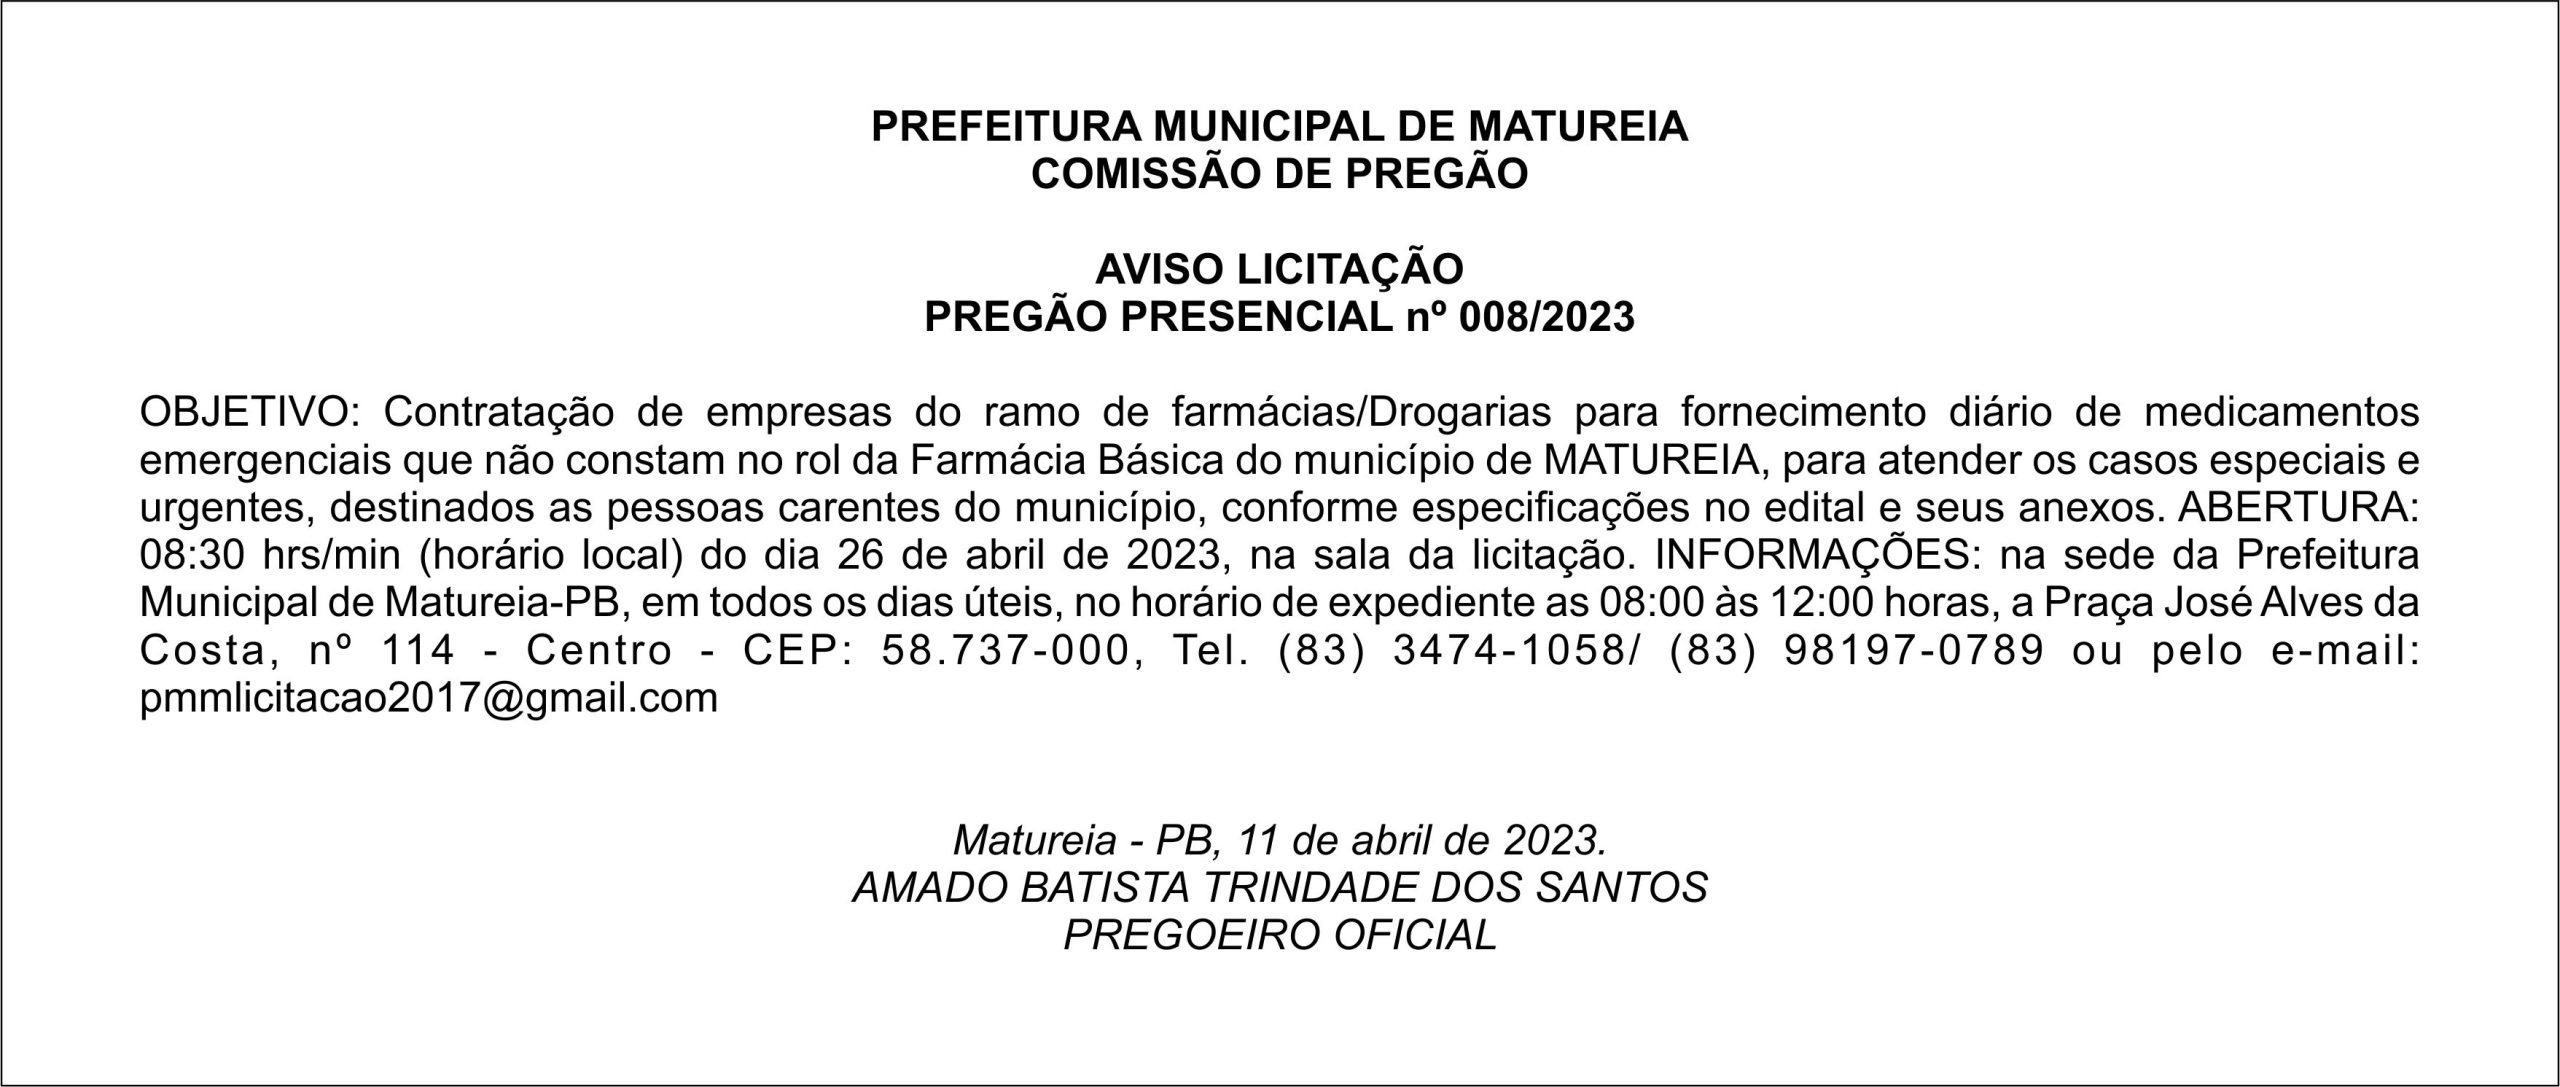 PREFEITURA MUNICIPAL DE MATUREIA – AVISO LICITAÇÃO – PREGÃO PRESENCIAL nº 008/2023